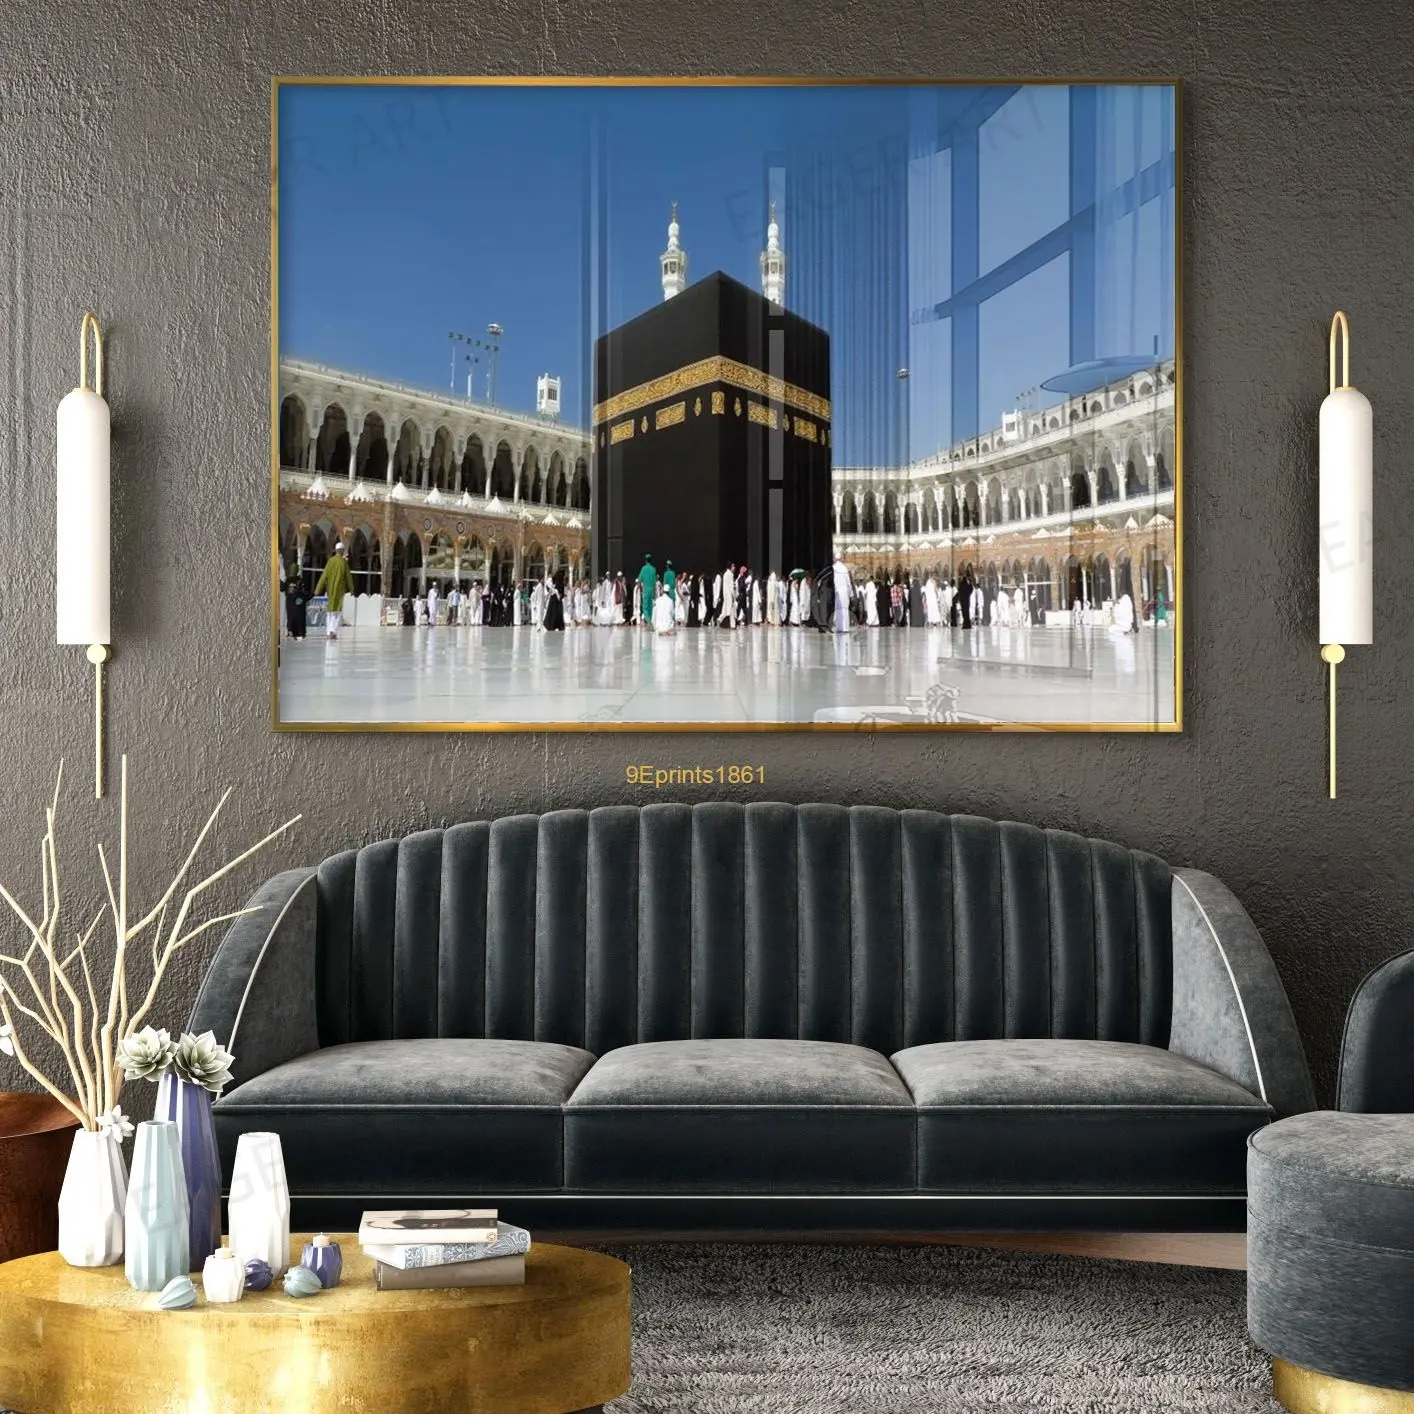 공장 도매 홈 장식 이슬람 아랍어 모스크 아크릴 인쇄 그림 럭셔리 이슬람 유리 벽 예술